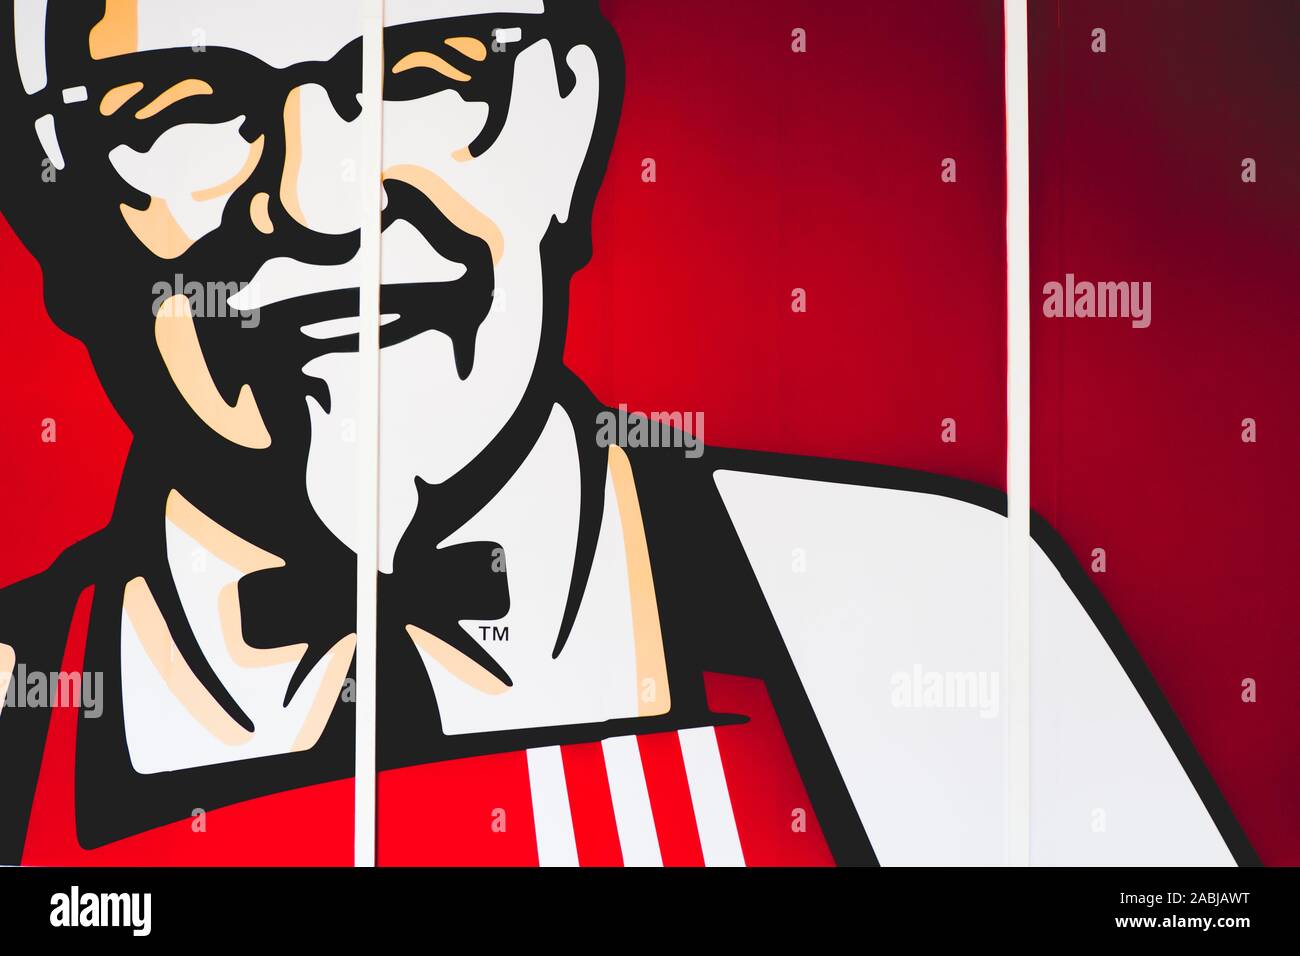 Điểm nhấn trên logo Colonel Sanders tinh tế chính là một trong những biểu hiện của sự sang trọng và đẳng cấp tại KFC. Hãy khám phá logo đầy cảm hứng này, để tận hưởng một trải nghiệm ẩm thực thật đẳng cấp.